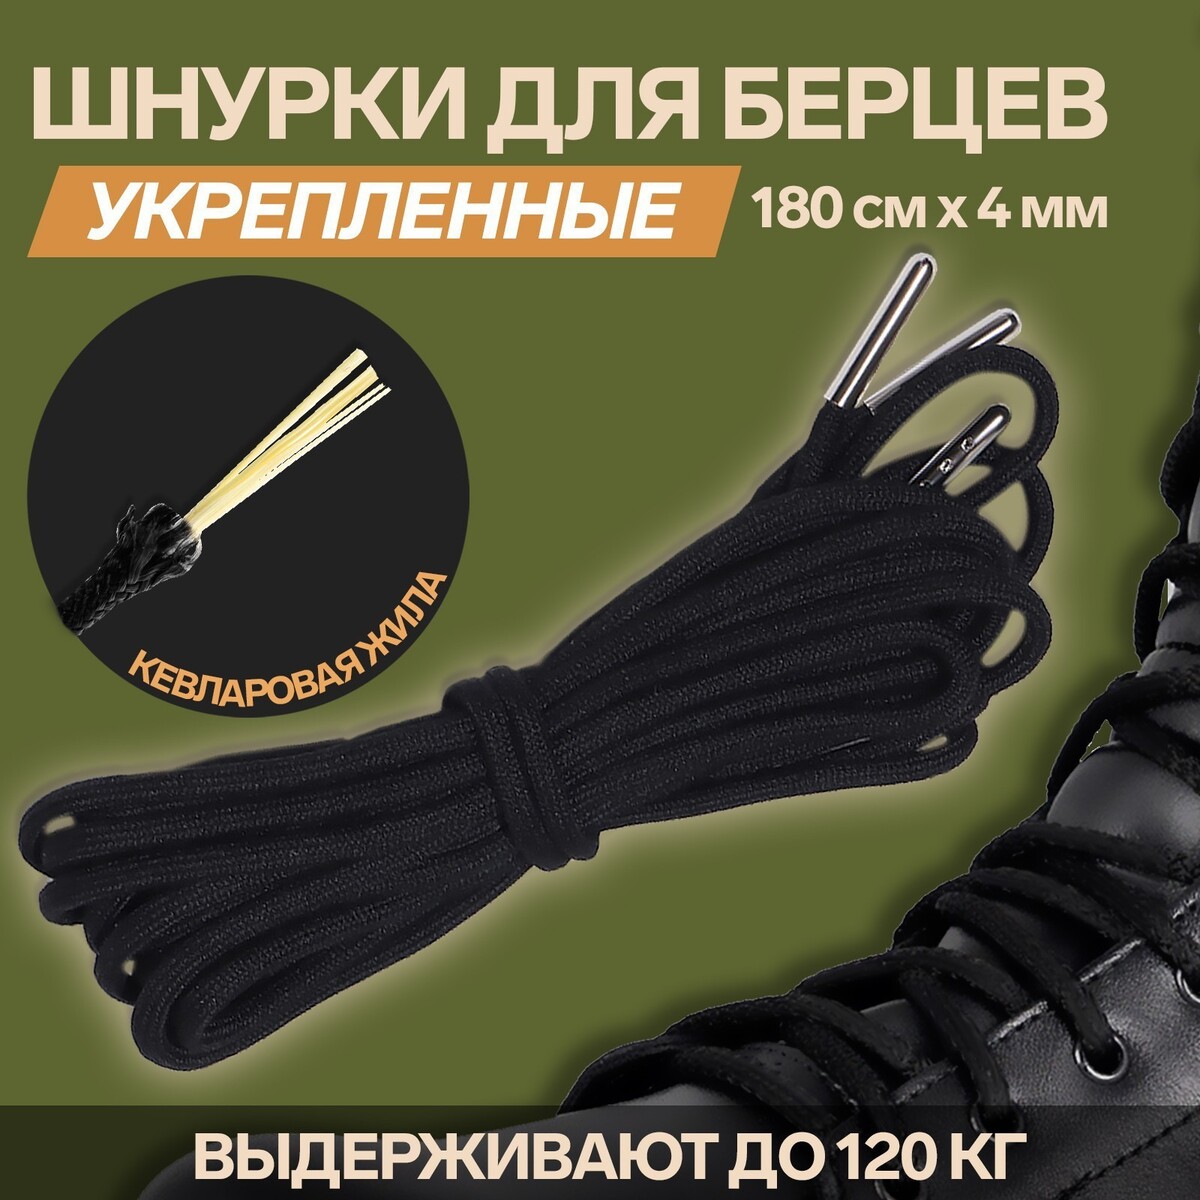 Шнурки для обуви, кевларовые, пара, круглые, d = 4 мм, 180 см, цвет черный